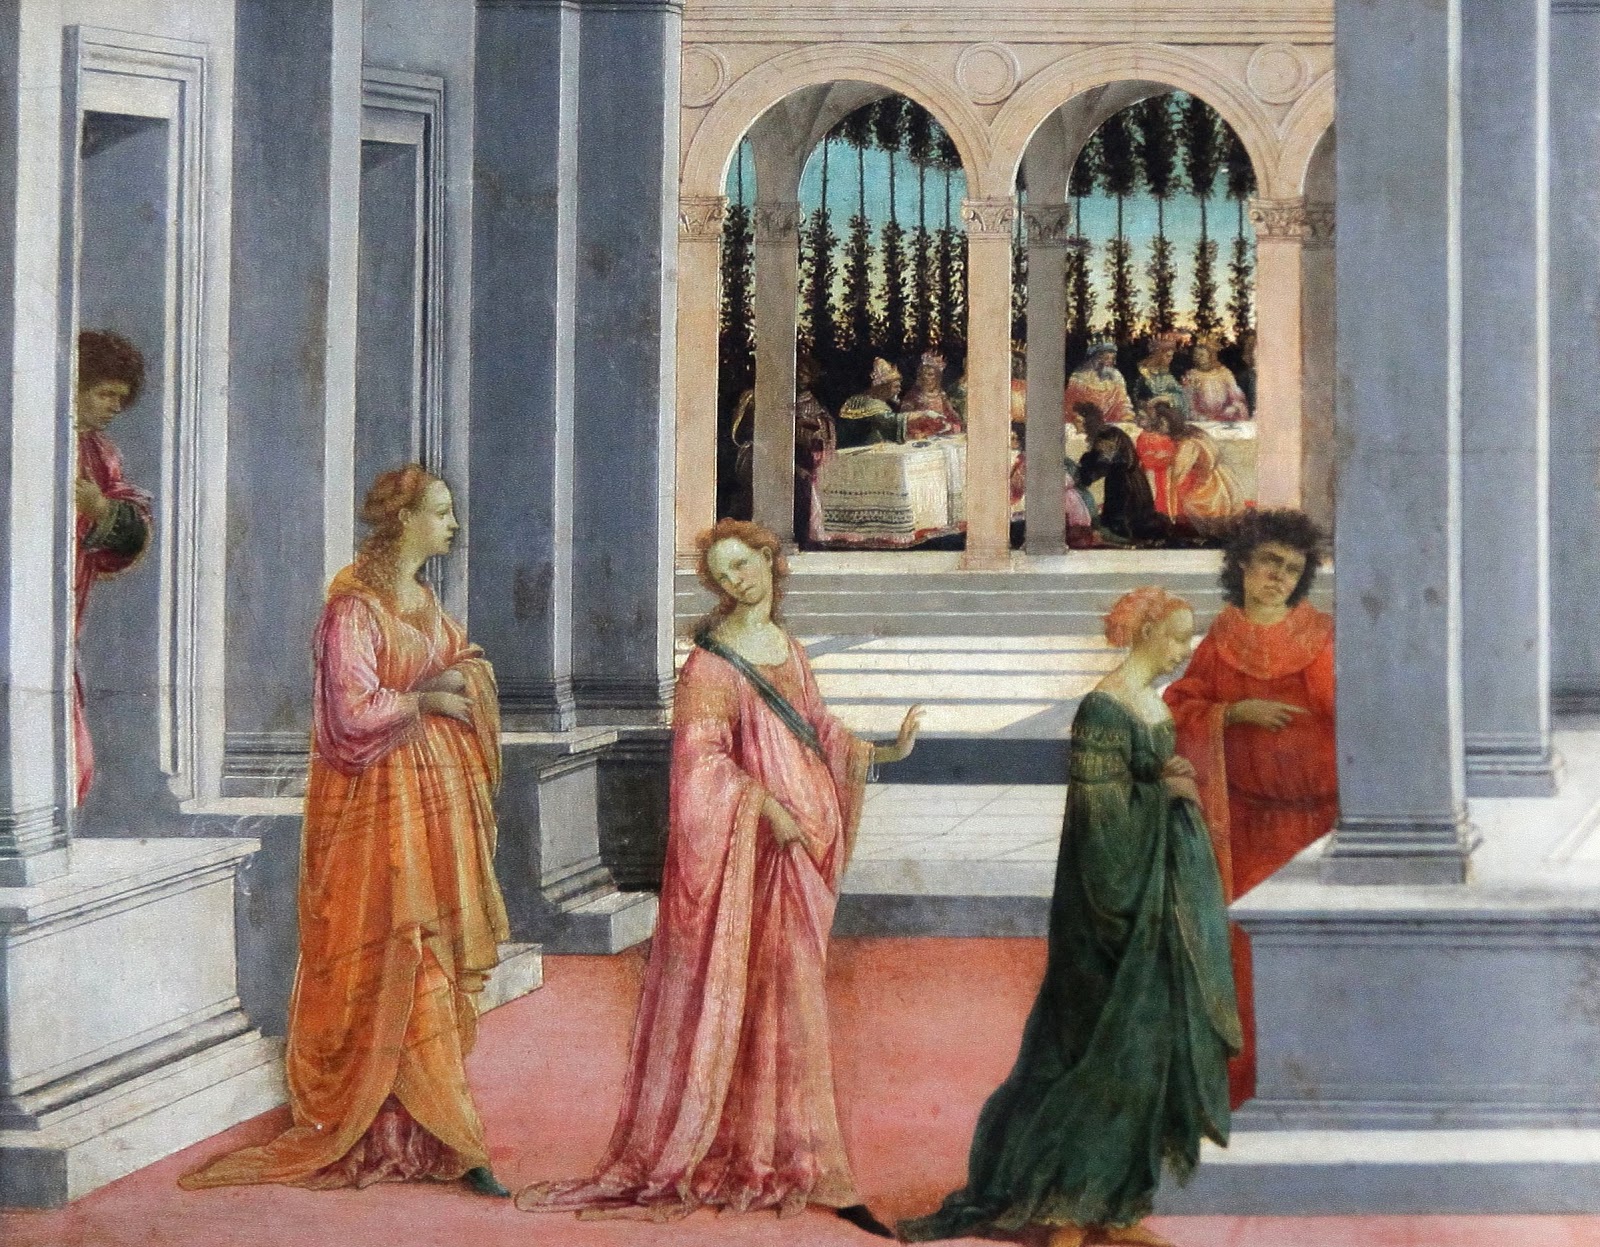 Filippino+Lippi-1457-1504 (6).jpg